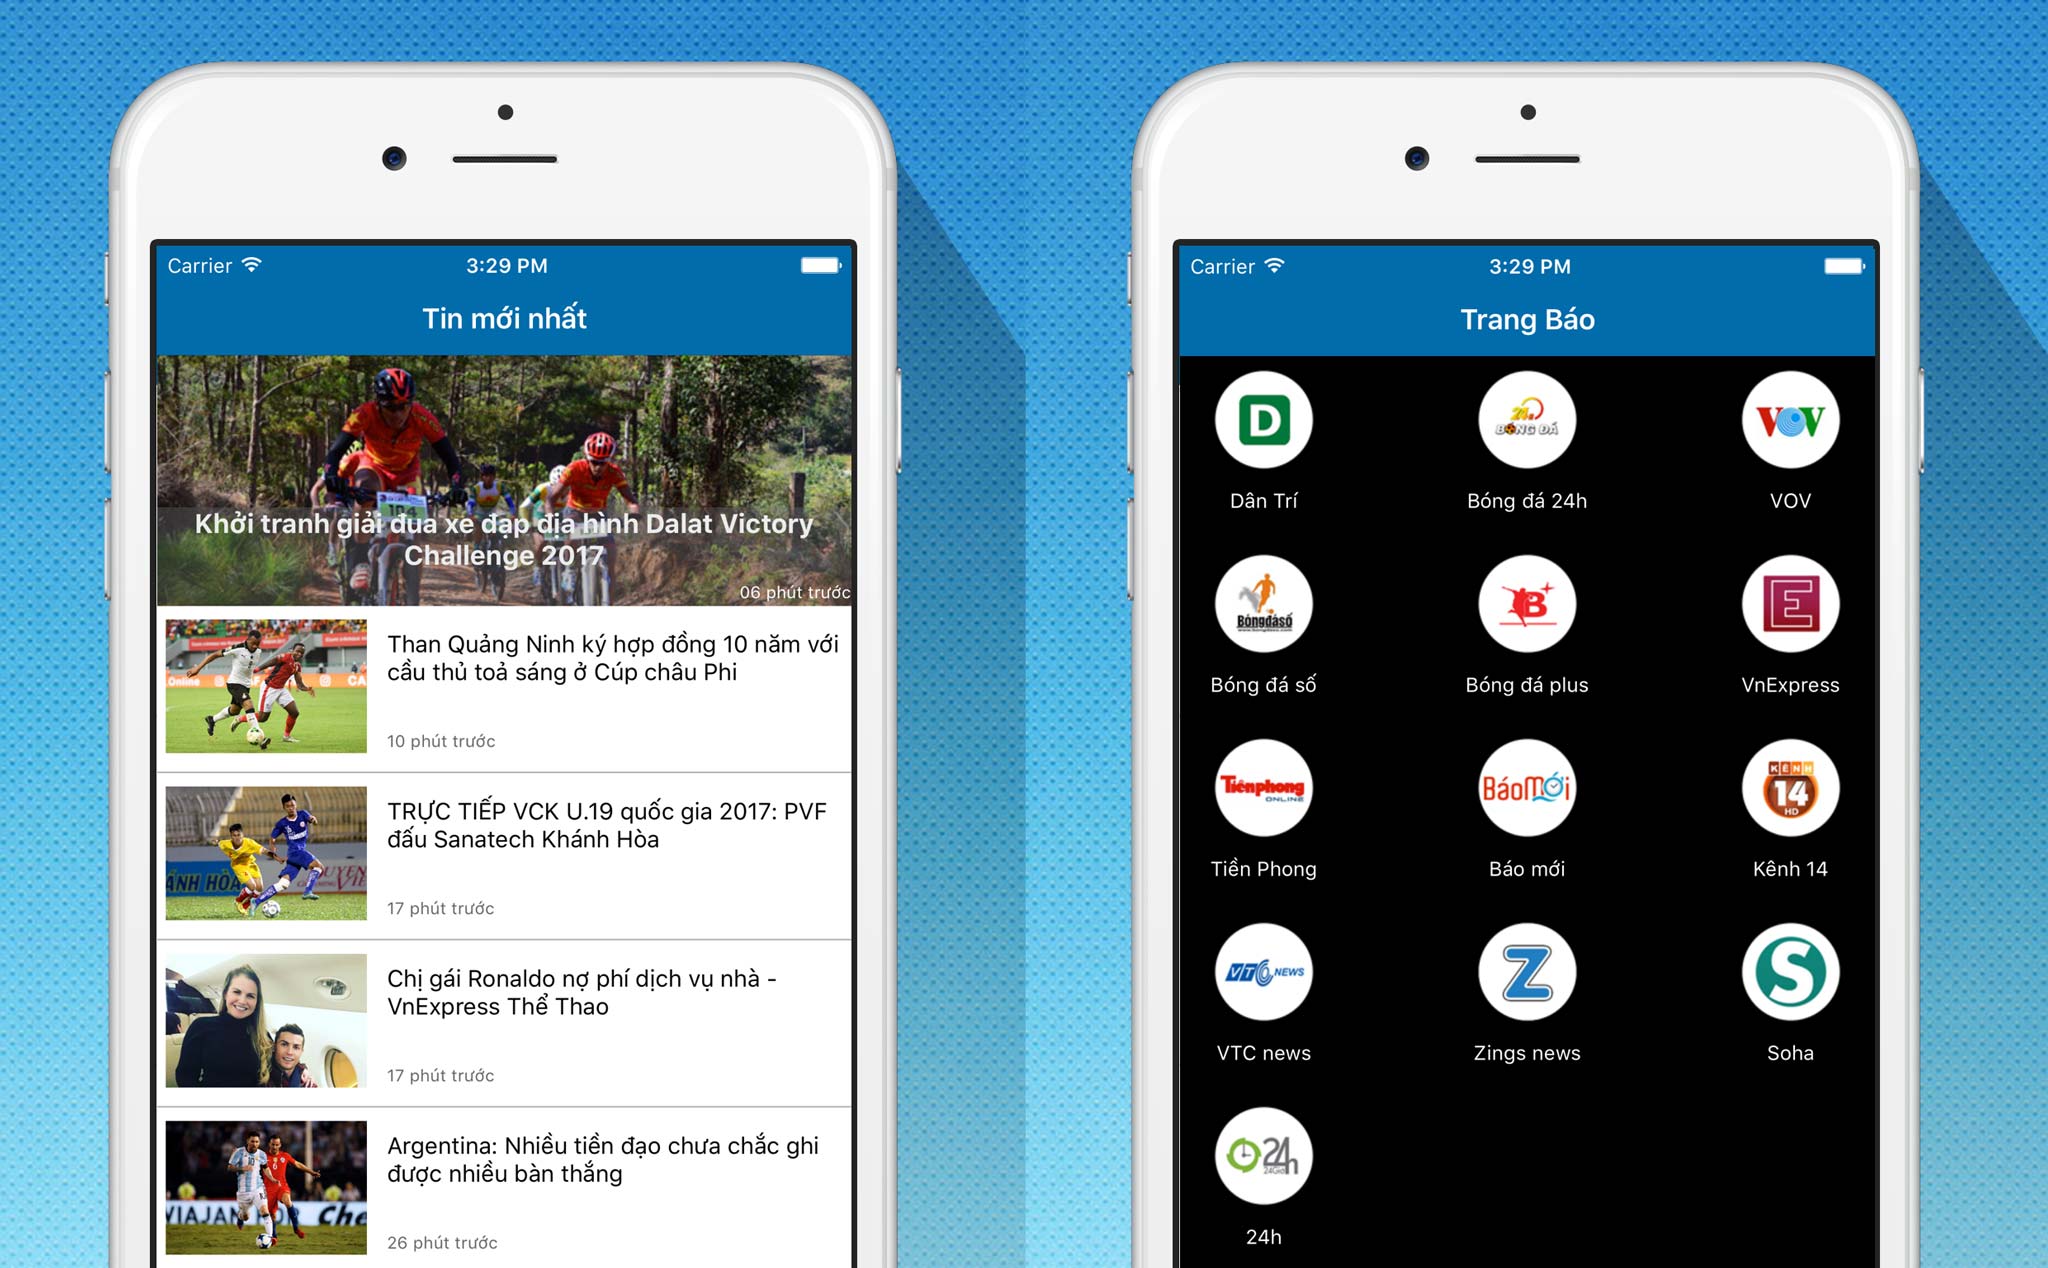 [iOS] Ghiền bóng đá: app tổng hợp thông tin bóng đá, mời các bạn dùng thử và góp ý